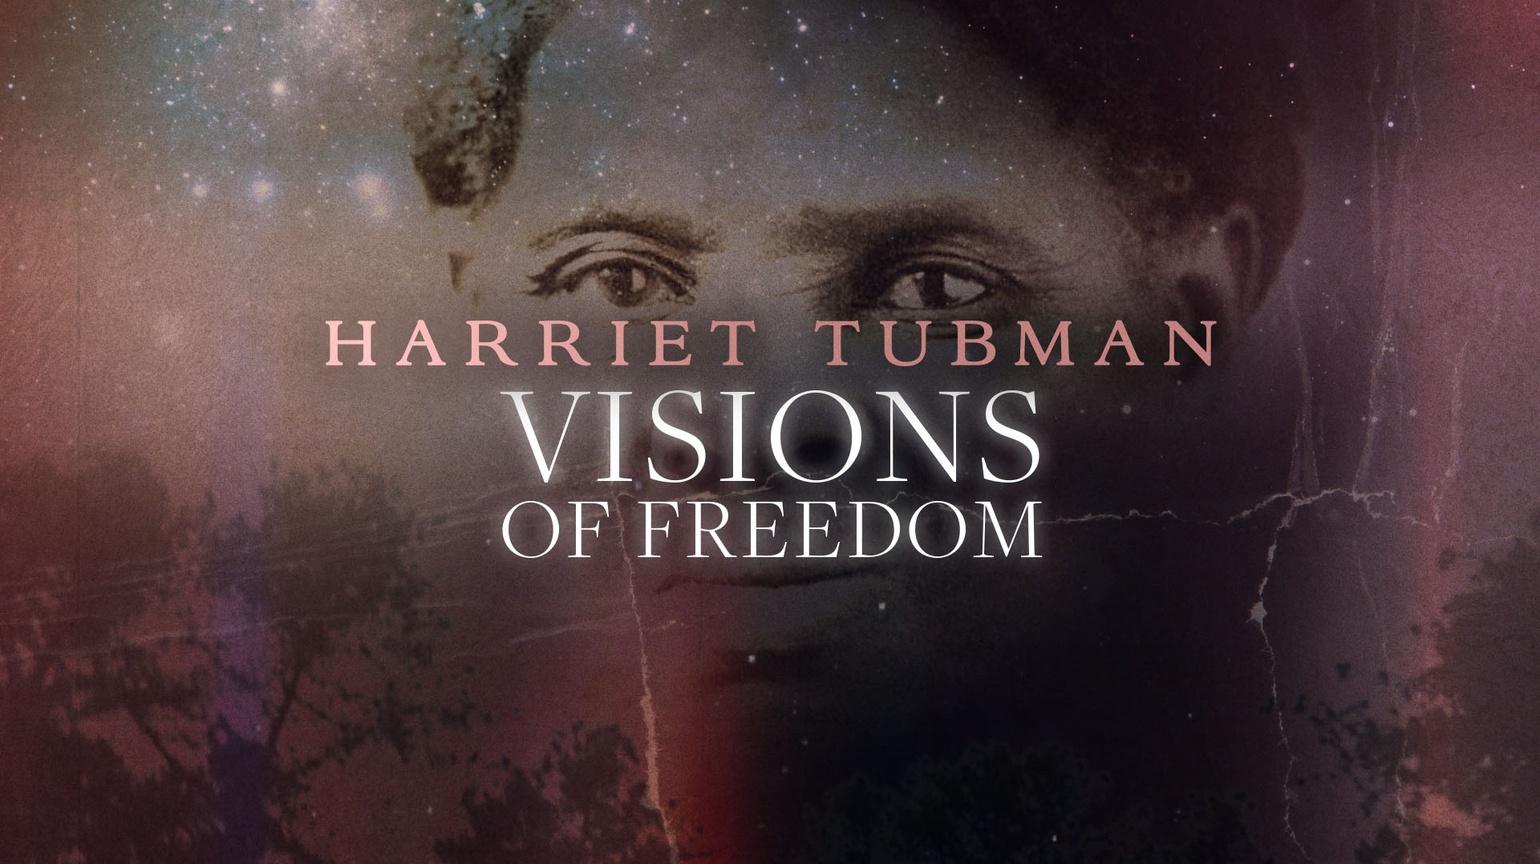 Harriet Tubman: An Inspiring Life